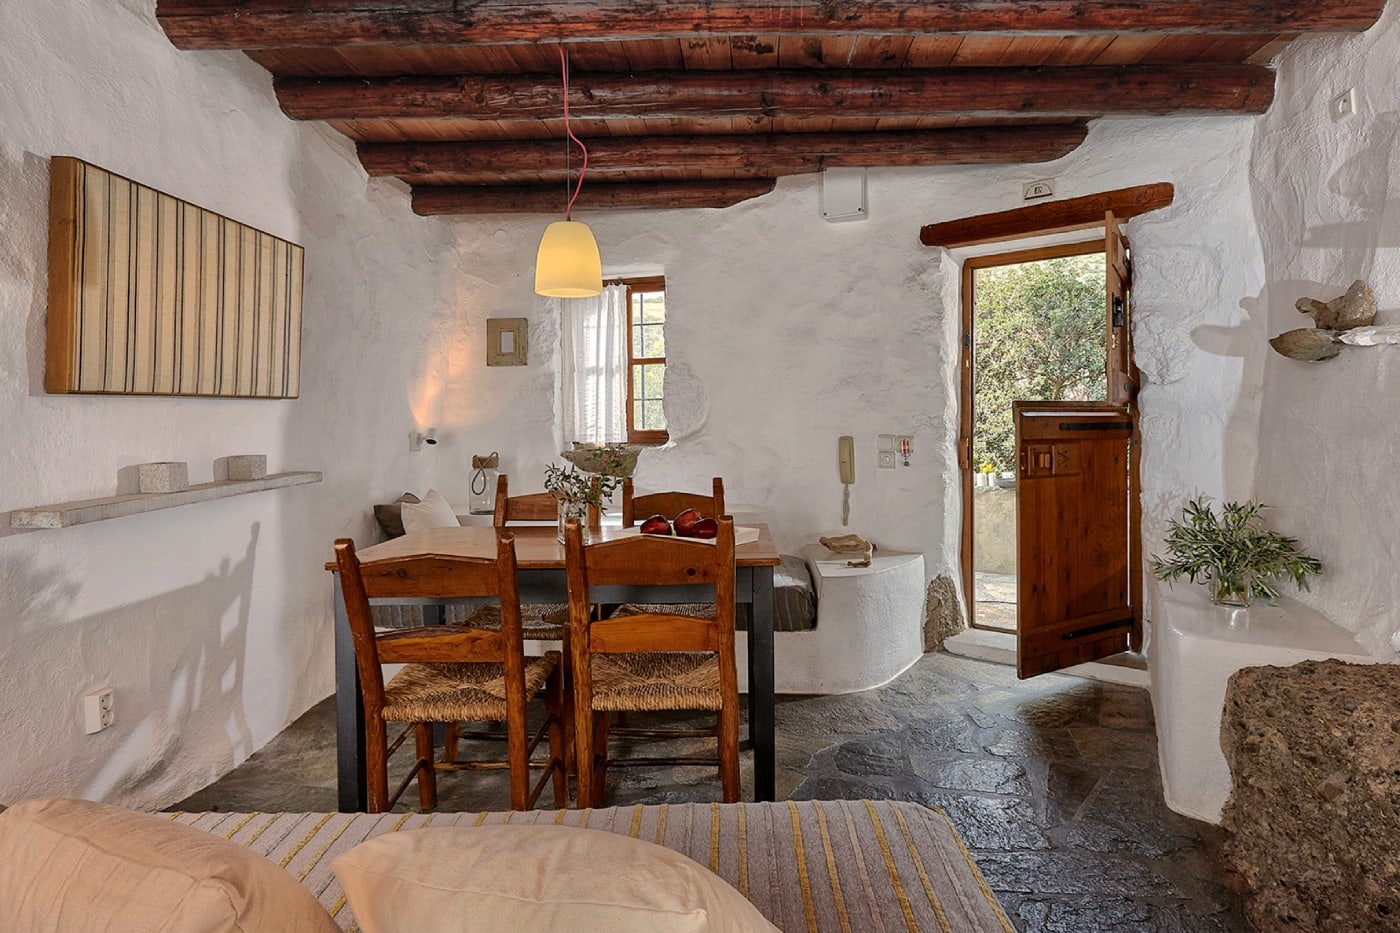 Familienurlaub auf Kreta: White River Cottages in Makrigialos // HIMBEER